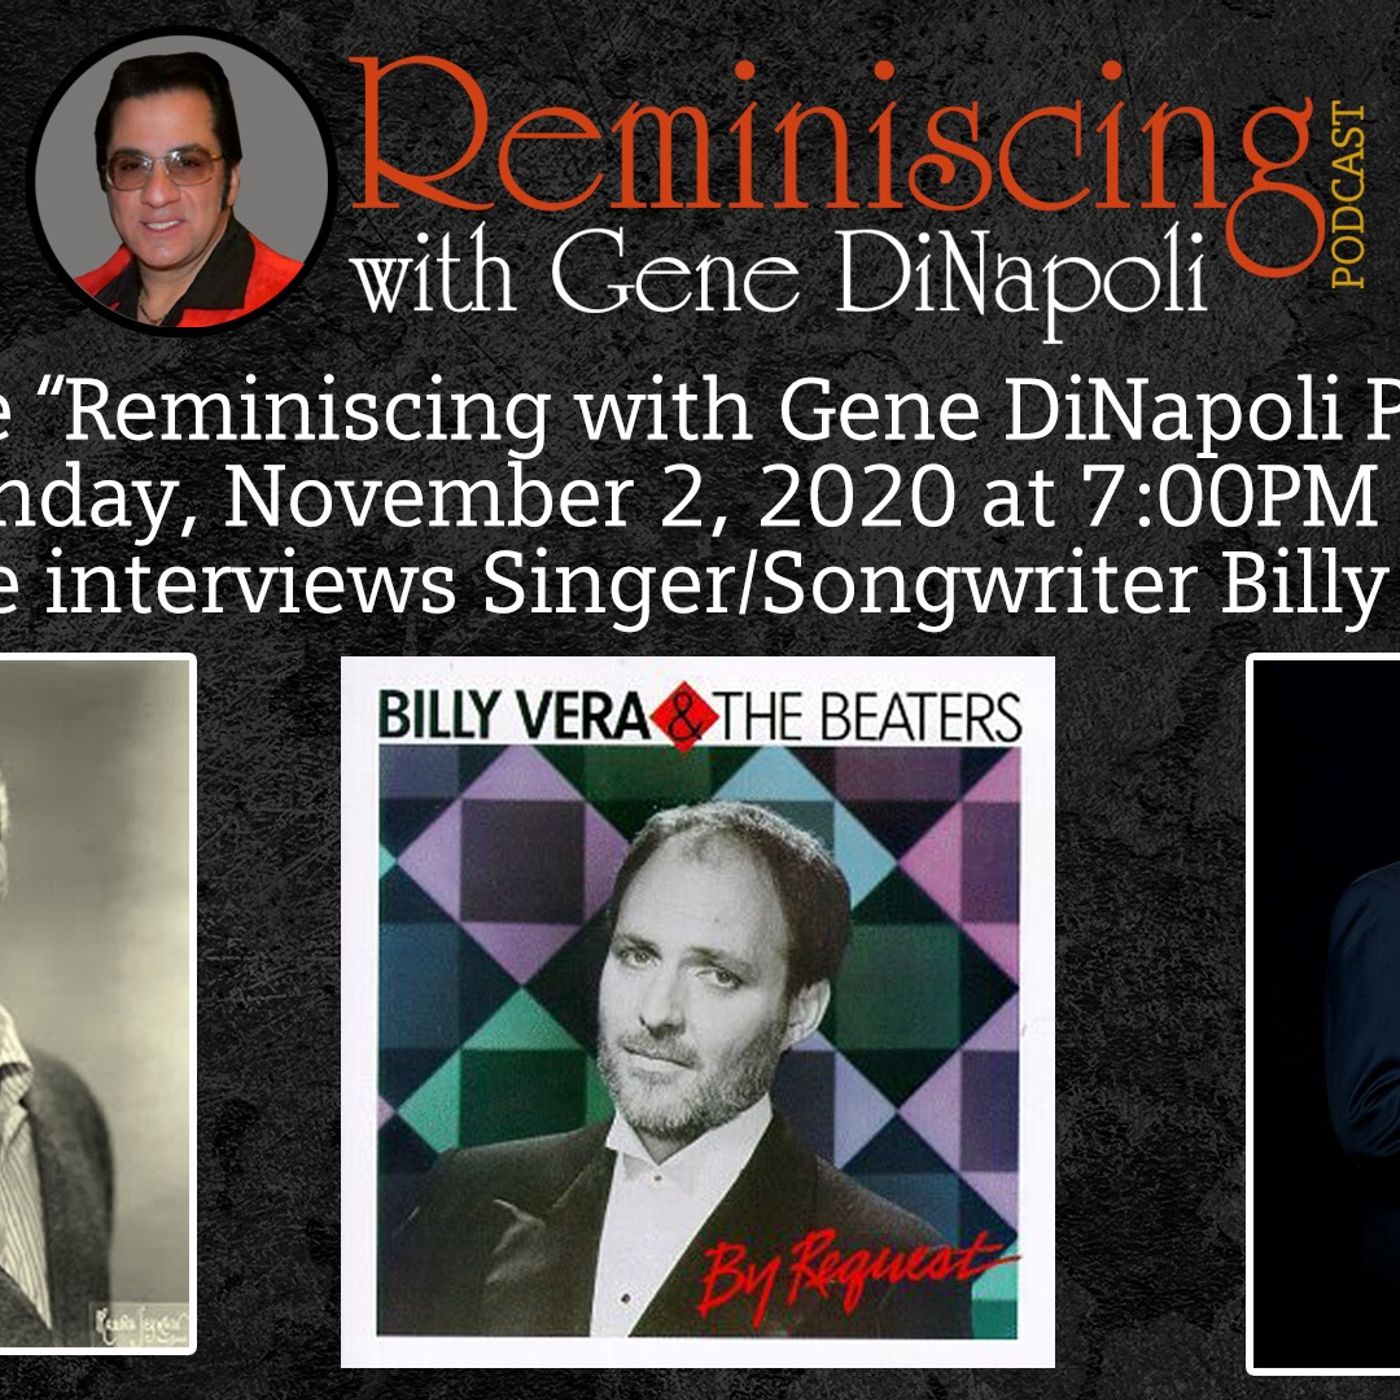 Billy Vera get’s interviewed by Gene DiNapoli